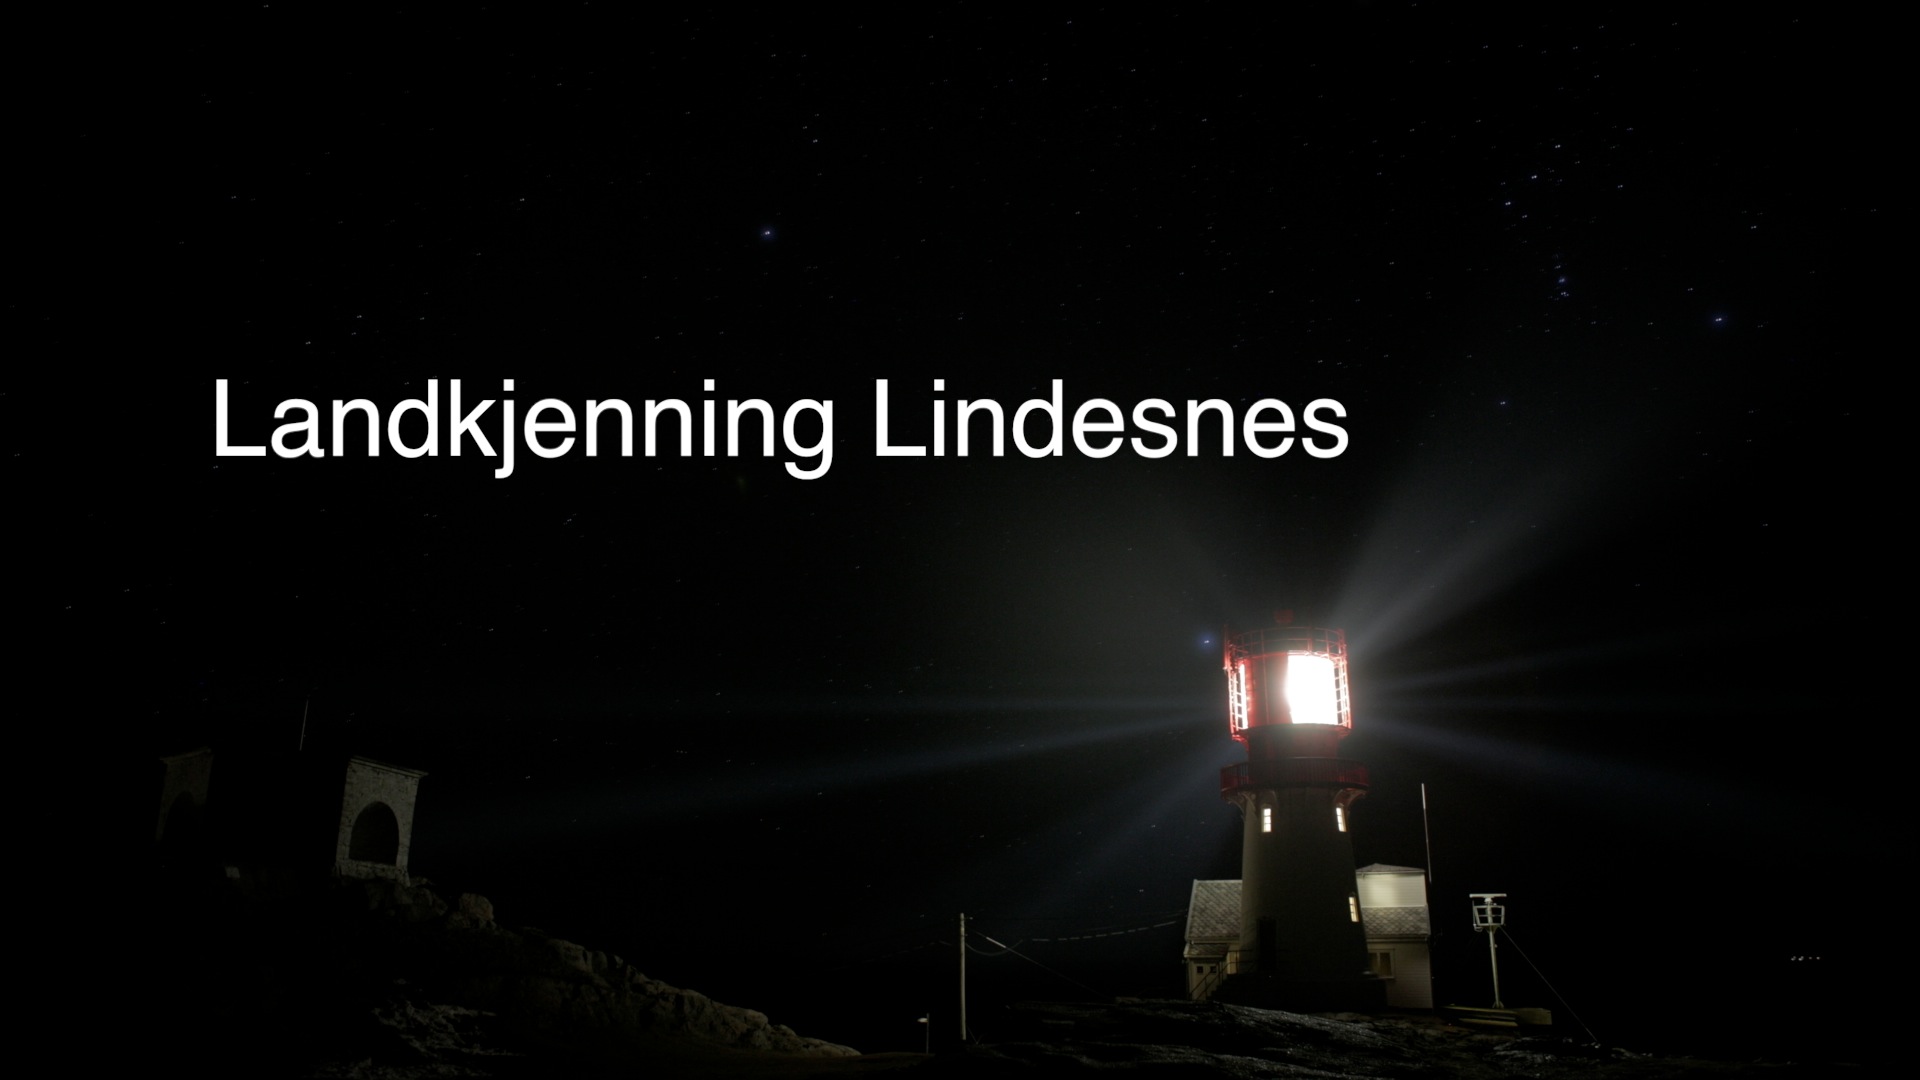 Landkjenning Lindesnes